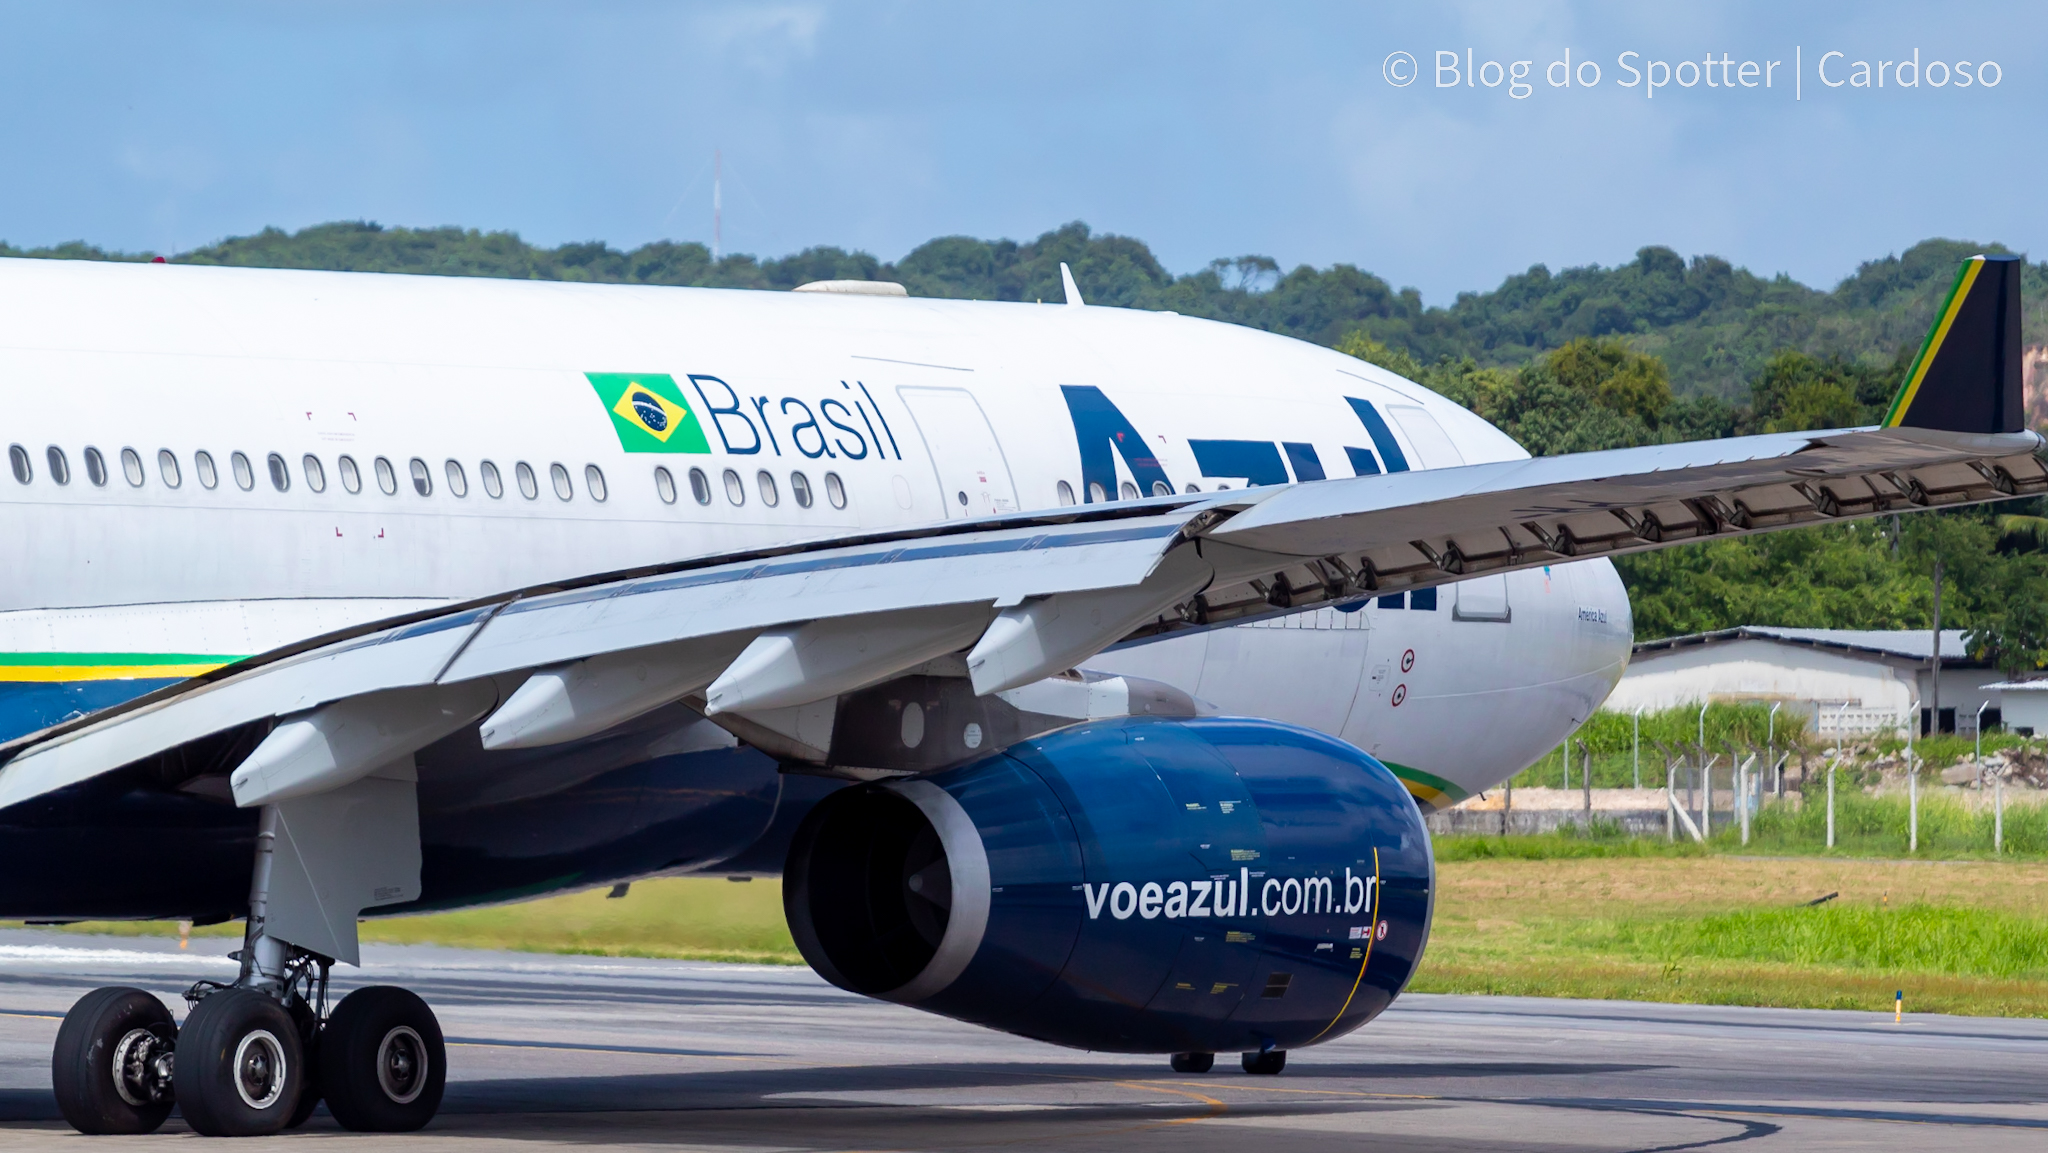 PR-AIZ – Airbus A330-243 – Azul Linhas Aéreas